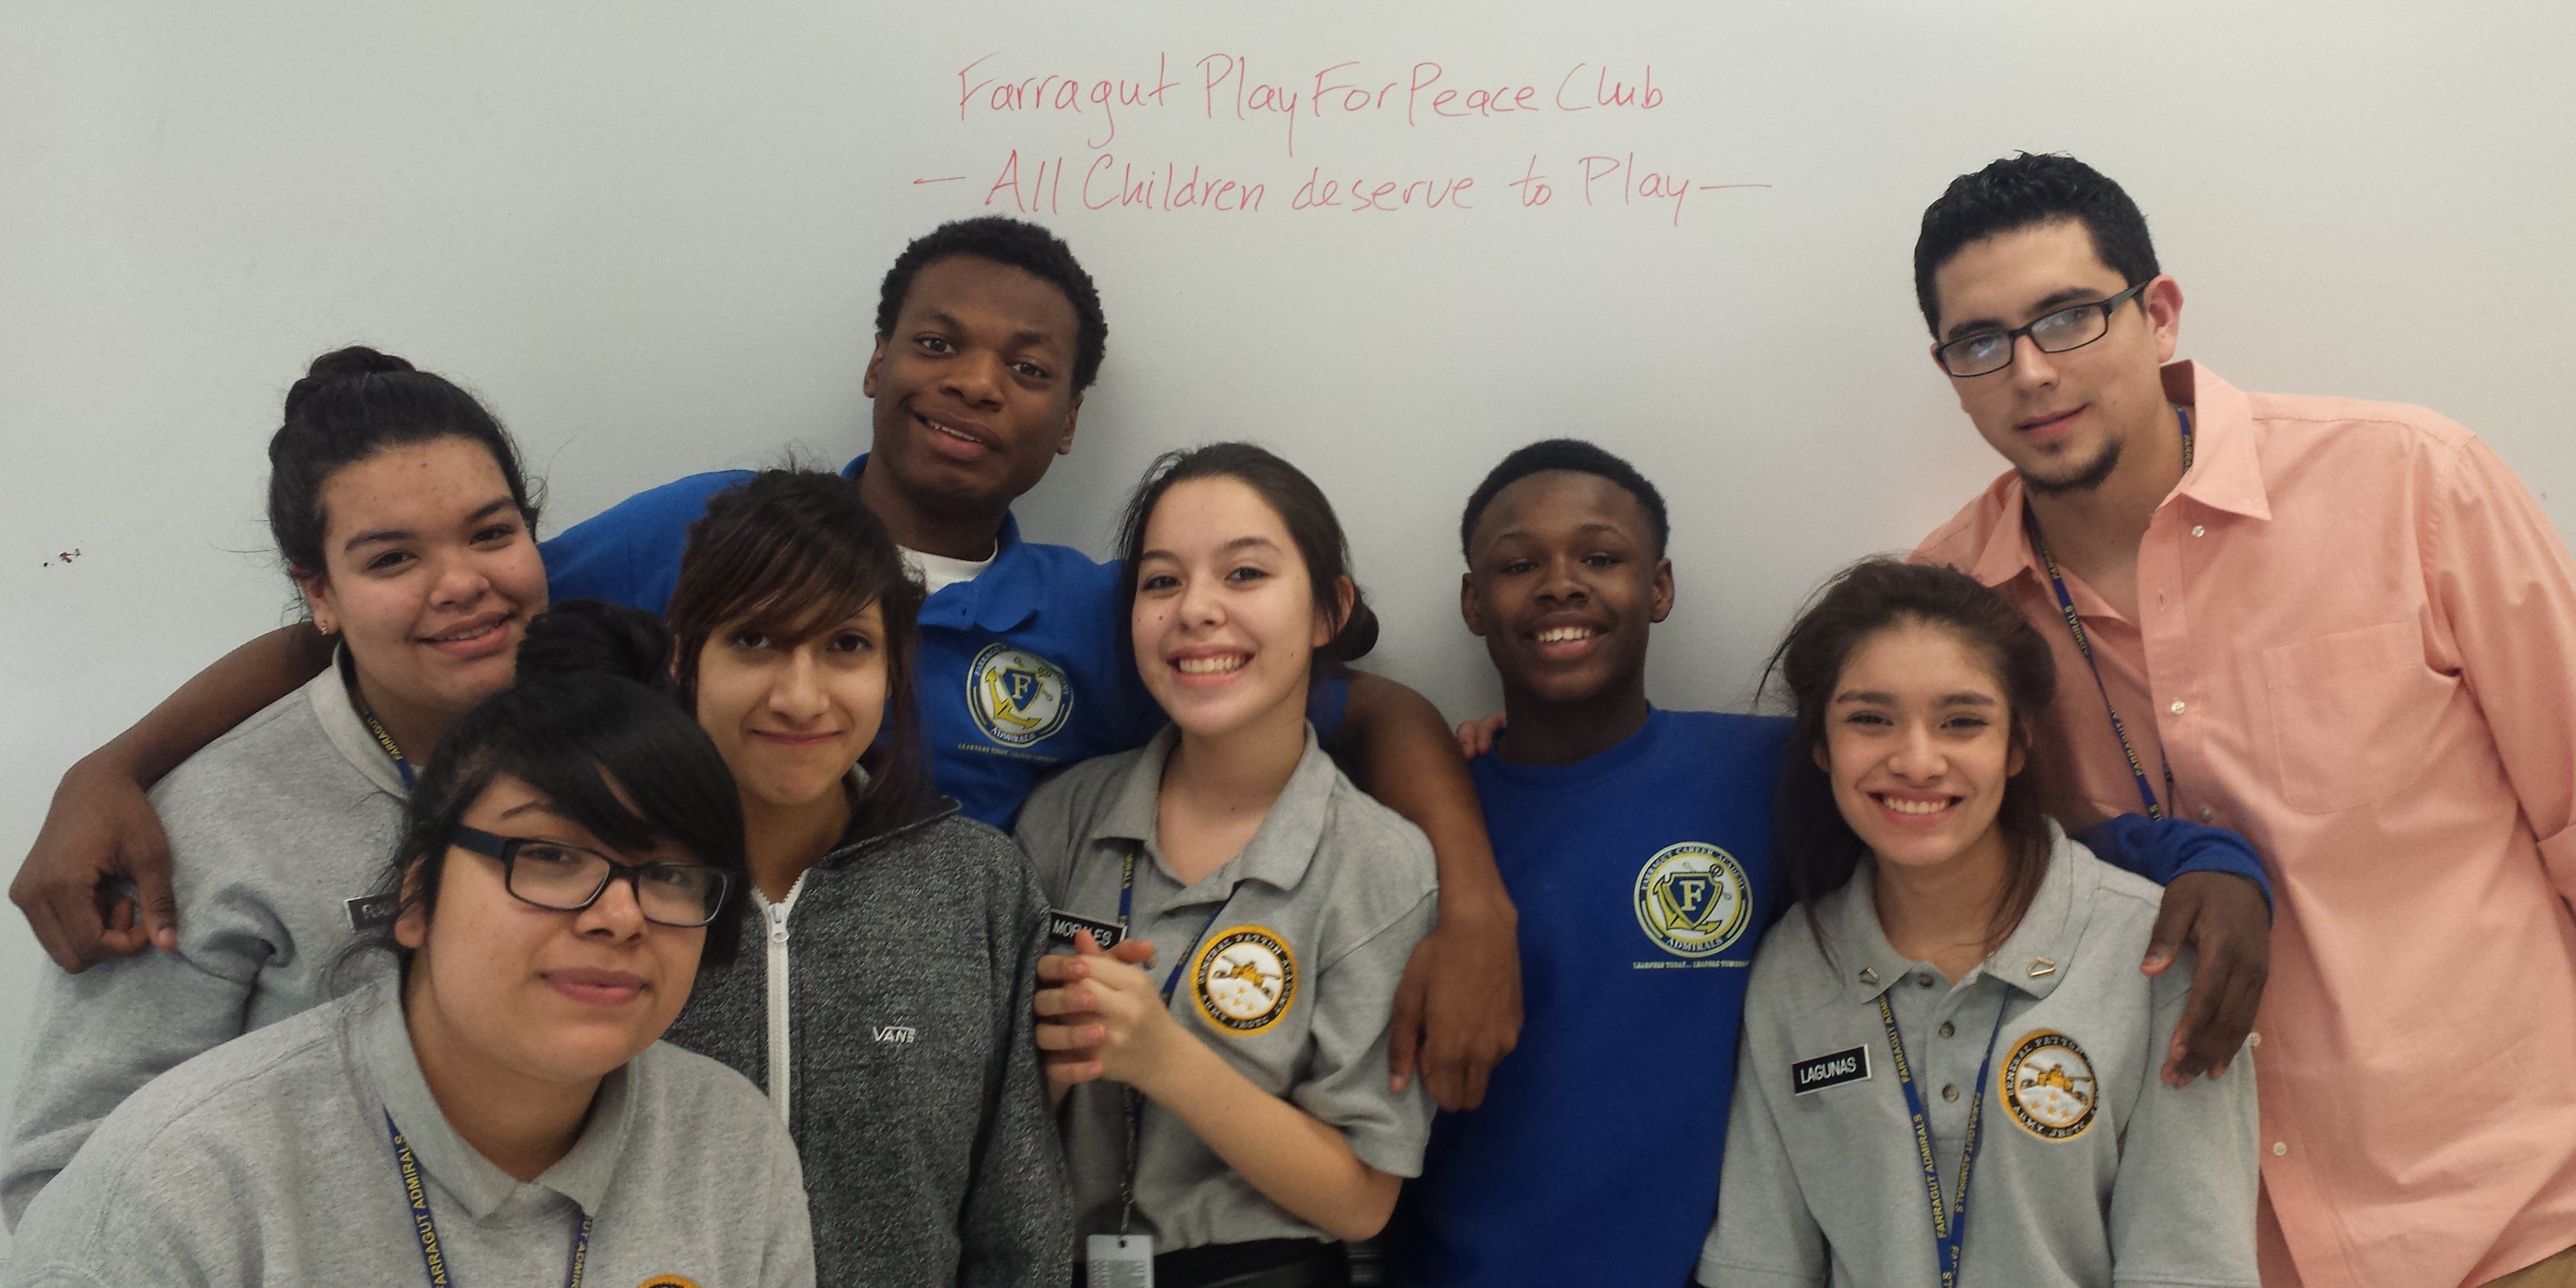 Introducing Farragut High School-PFP Club